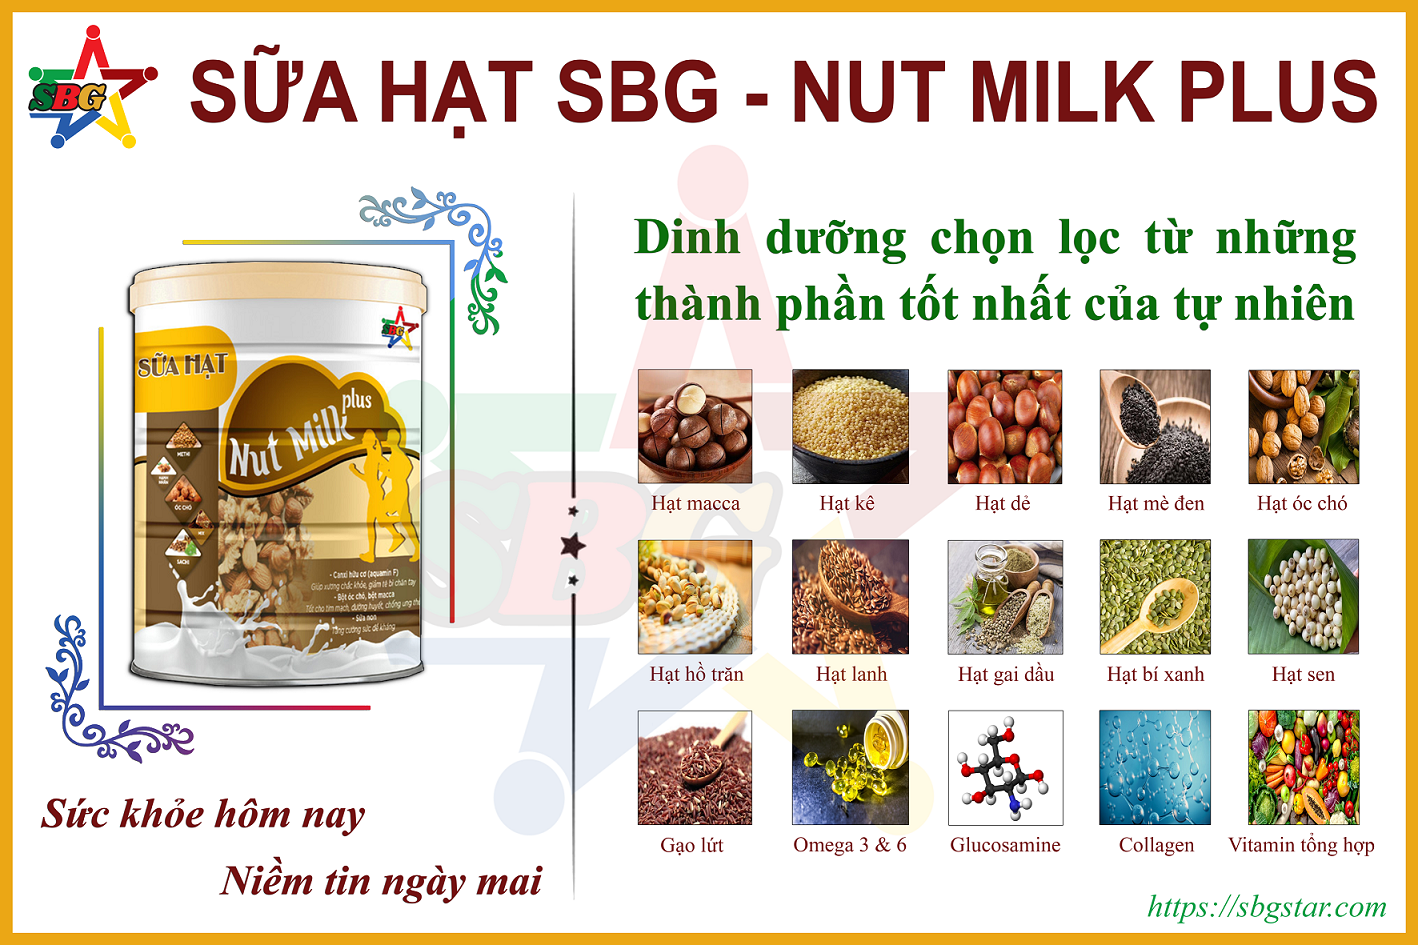 Hạt kê trong Sữa hạt cao cấp SBG - Nut Milk Plus